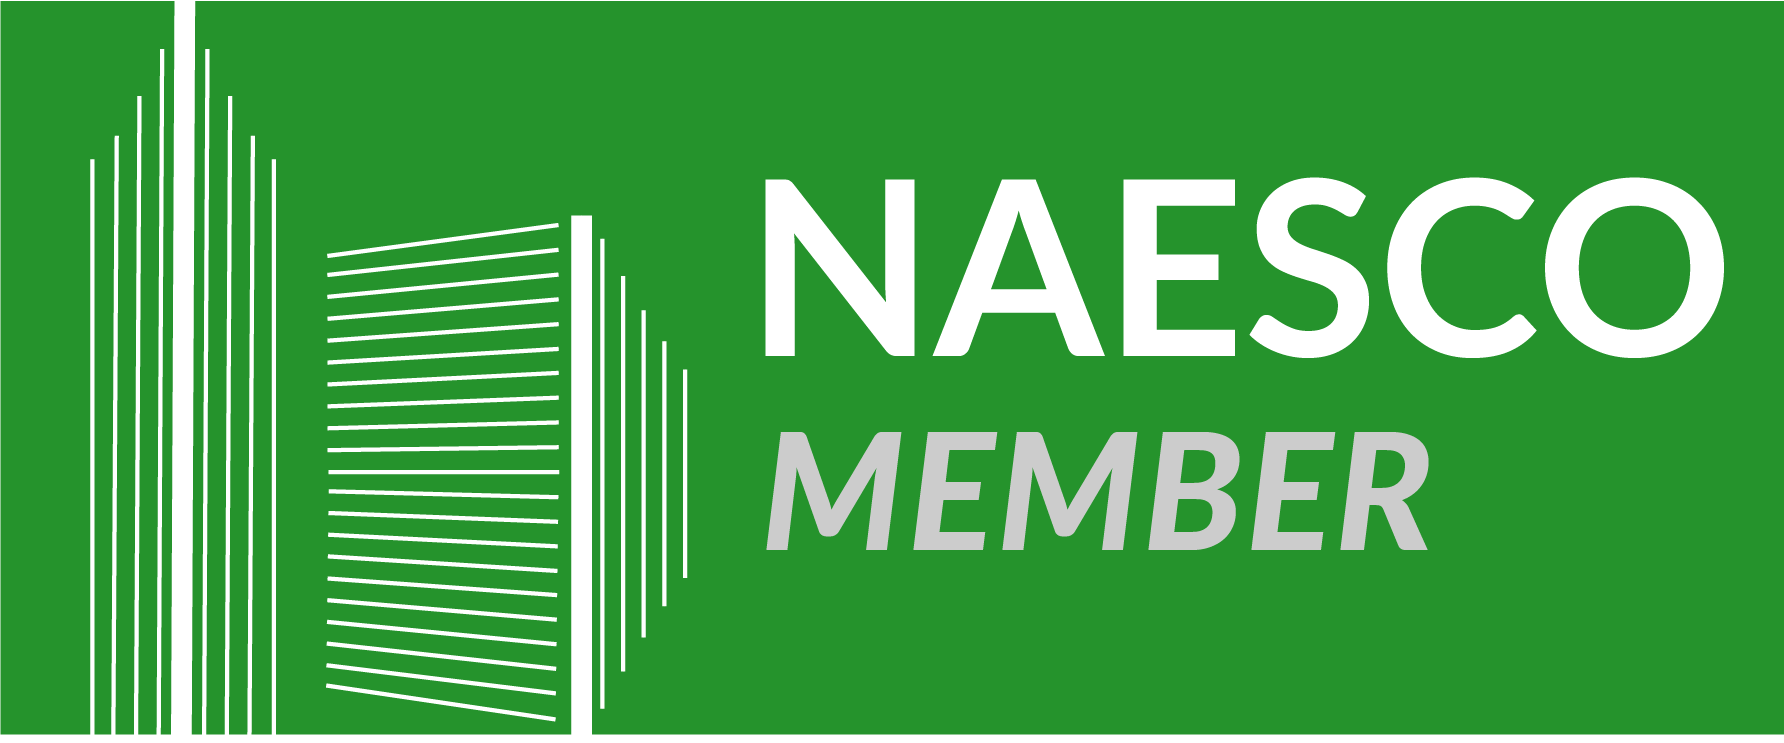 NAESCO Member Logo